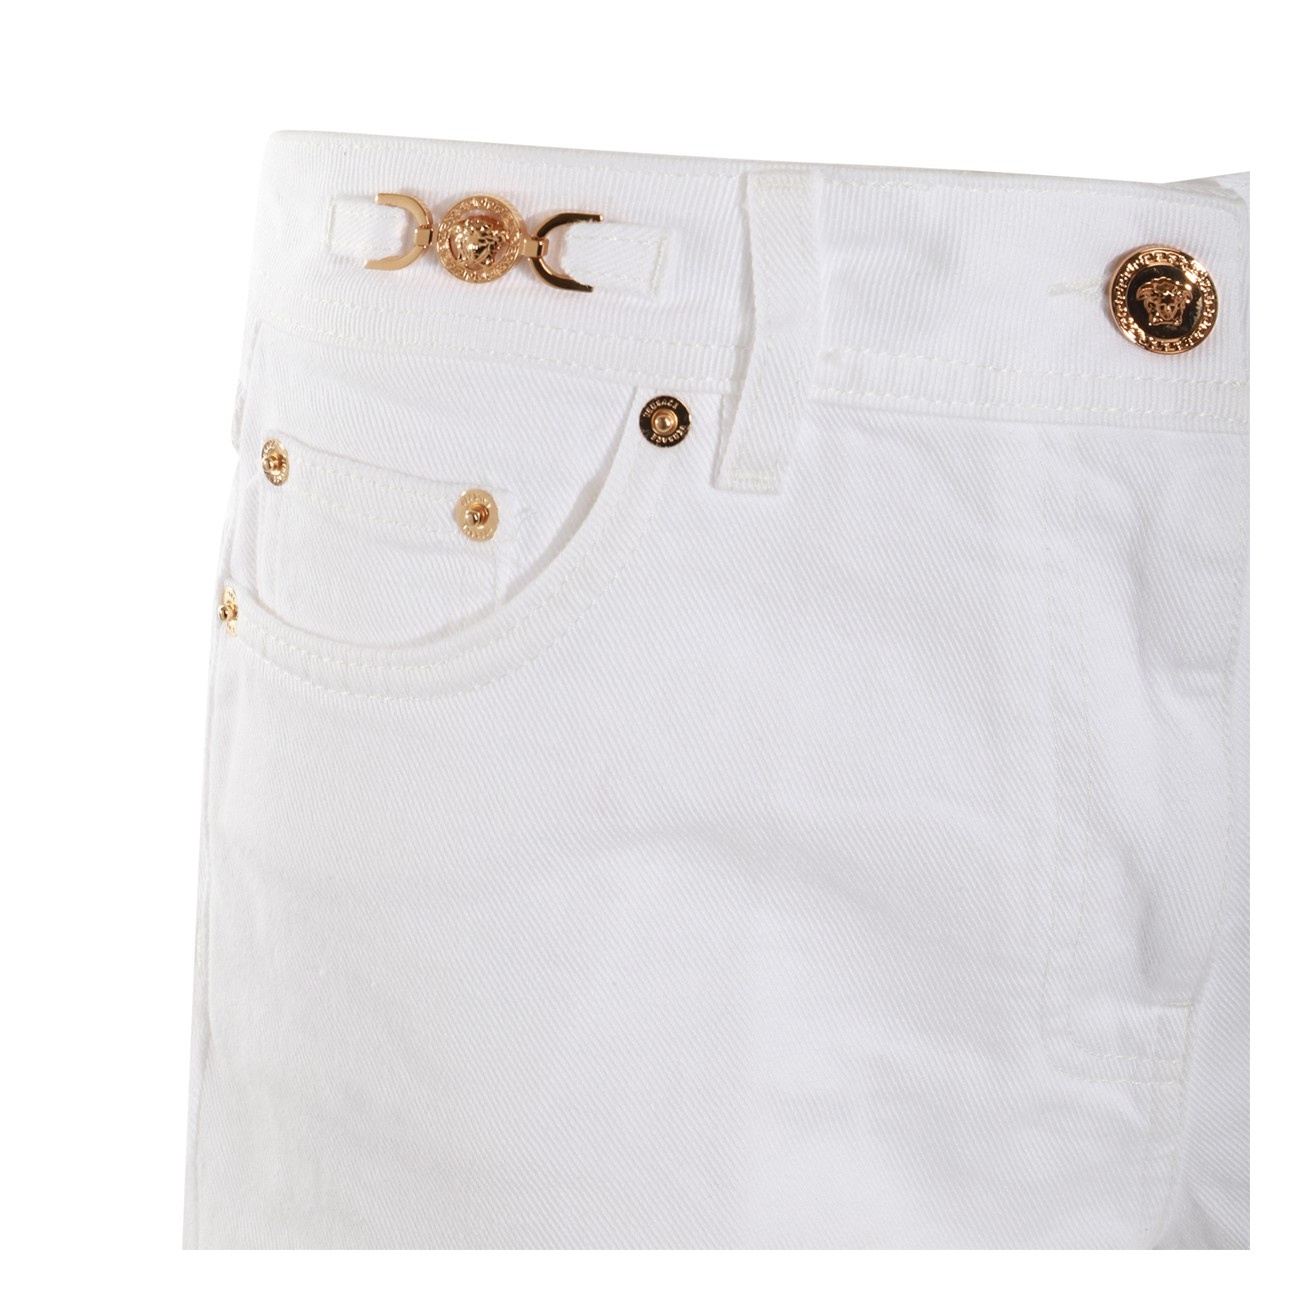 white cotton denim shorts - 3